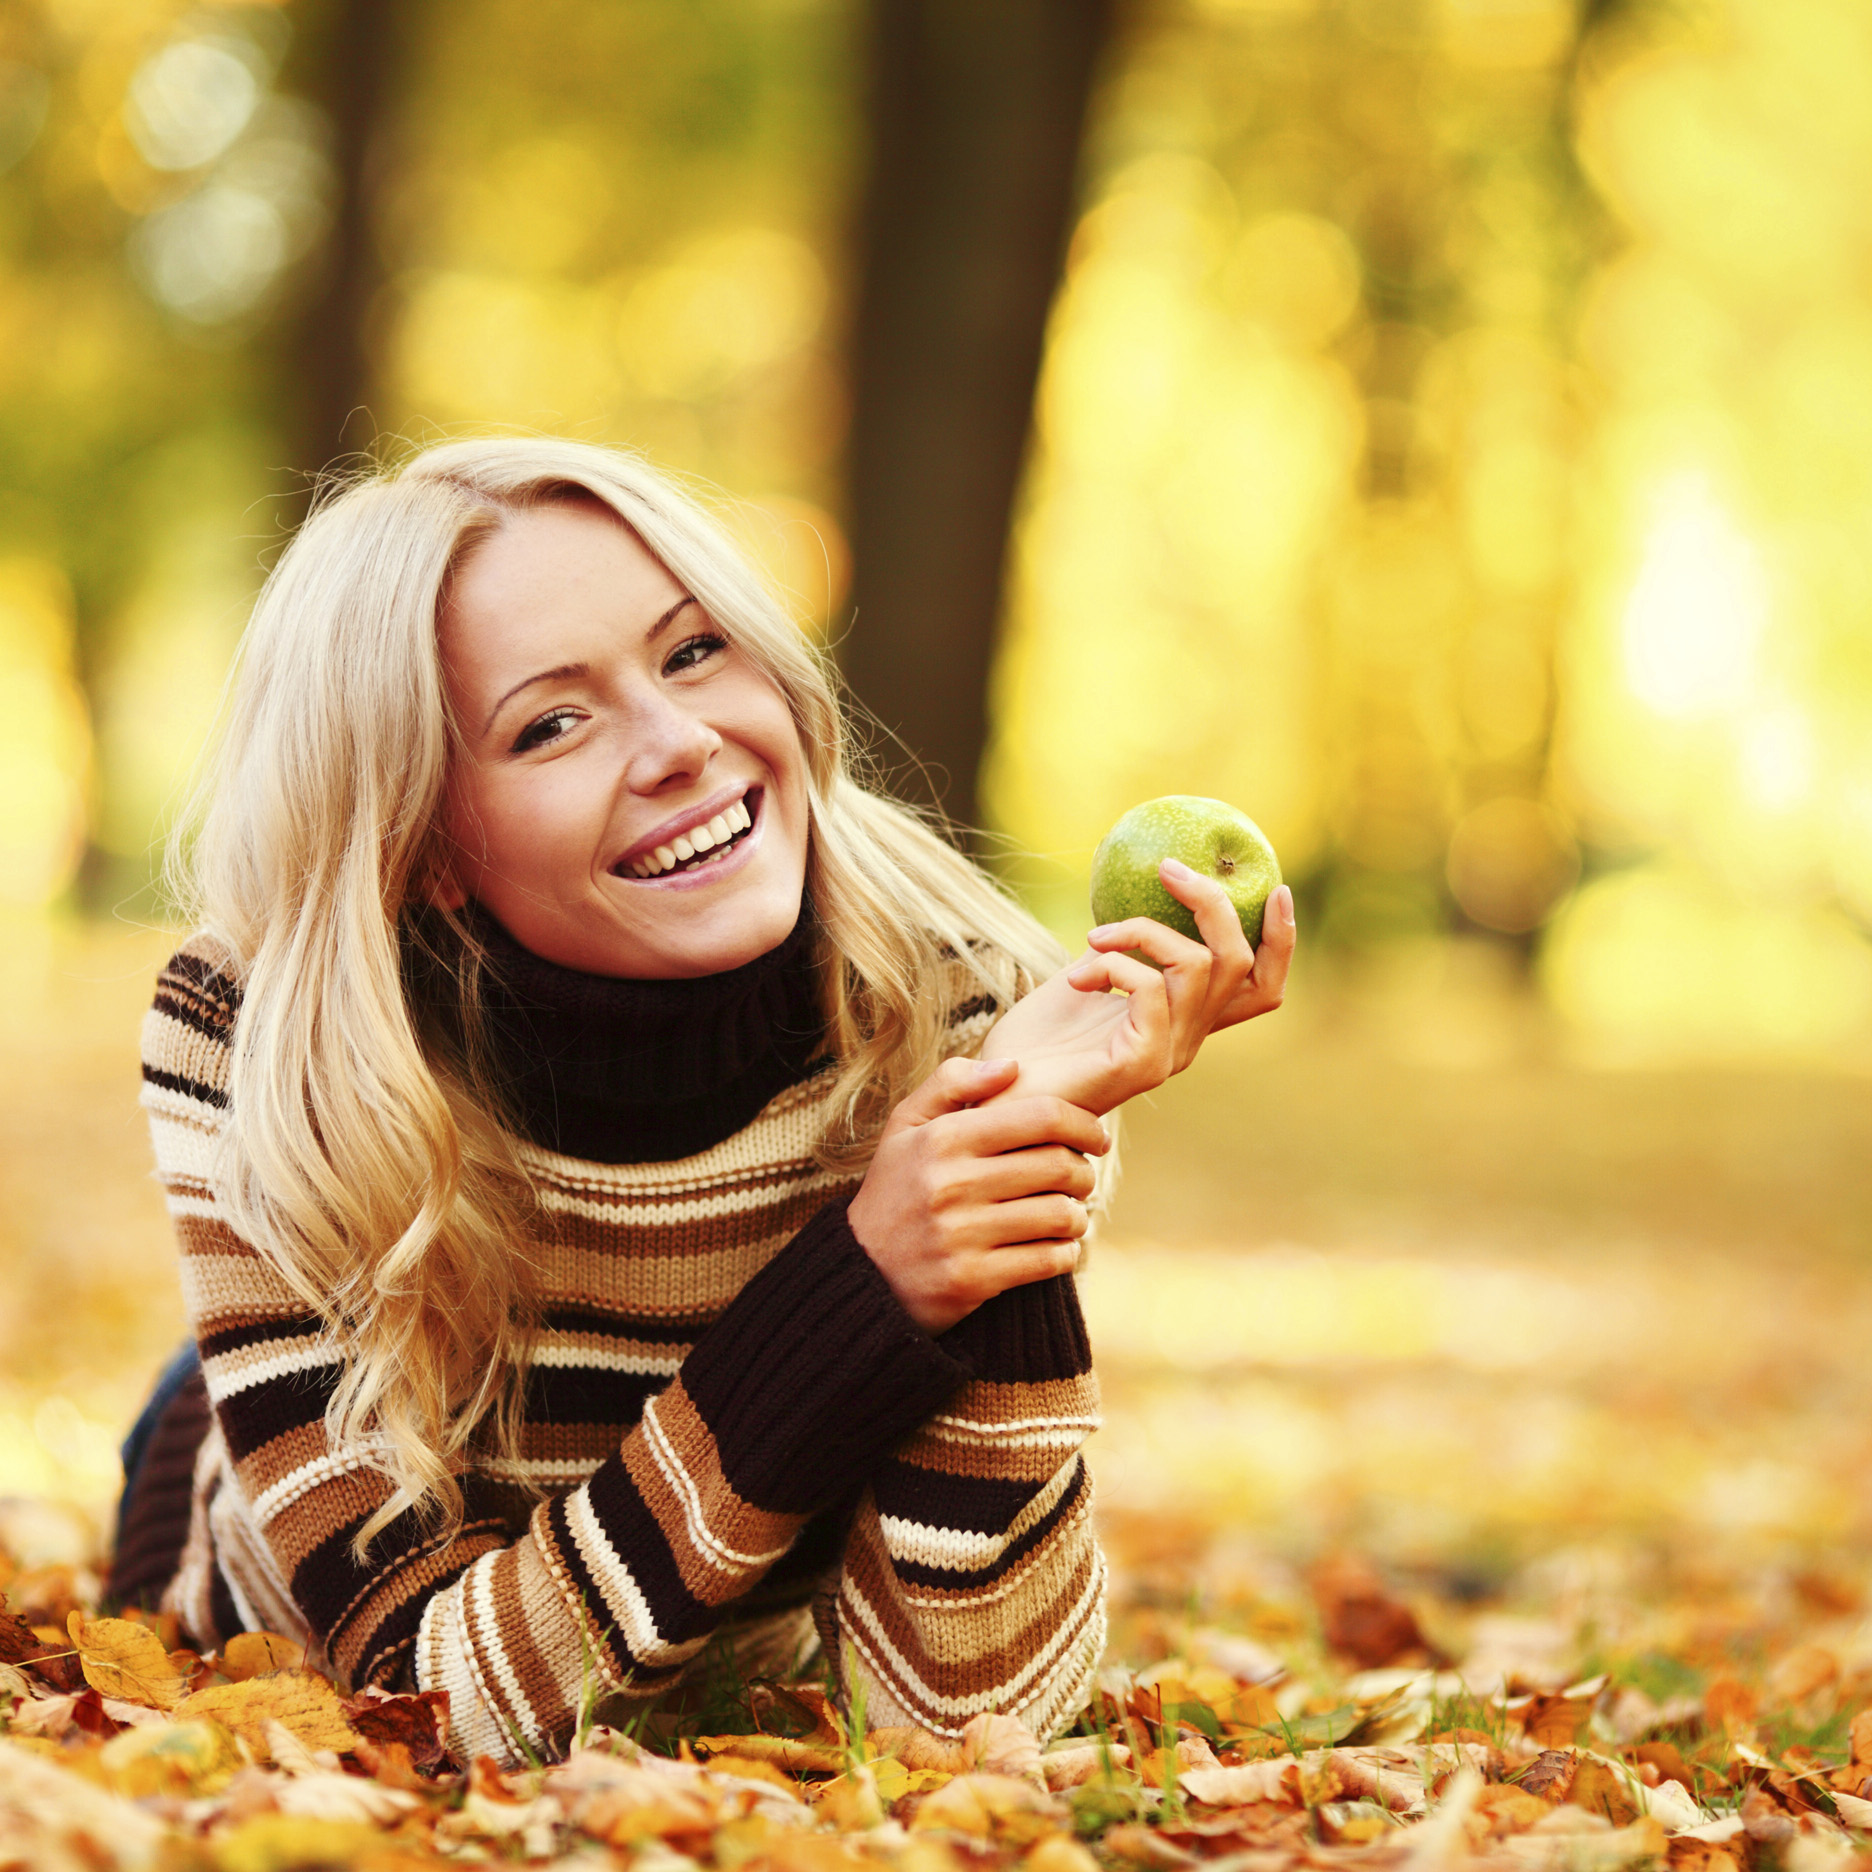 woman eat apple in autumn park